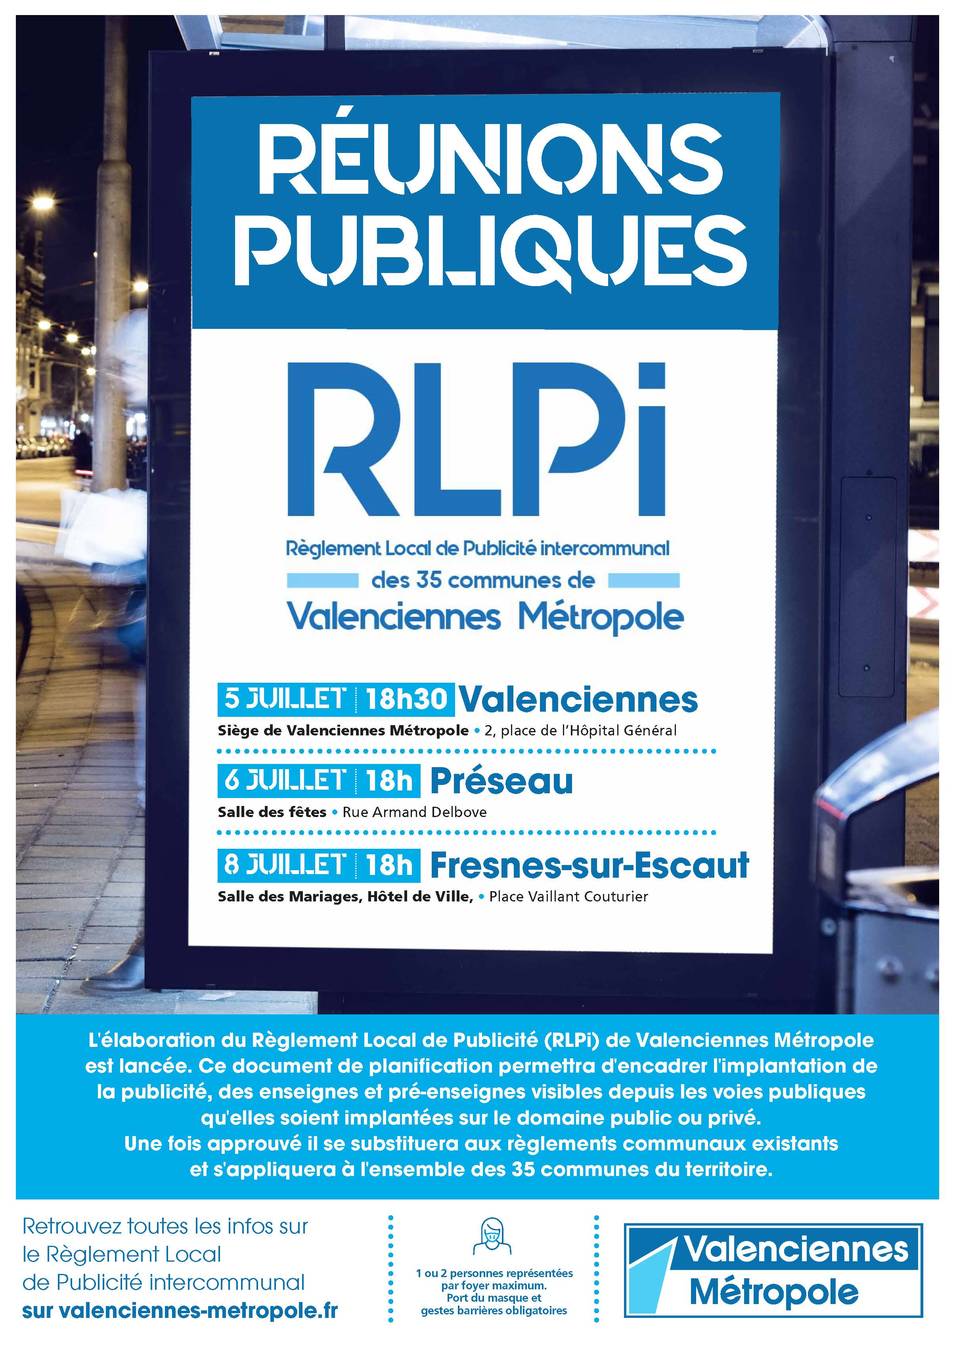 A3 affiche RLPi reunion publique